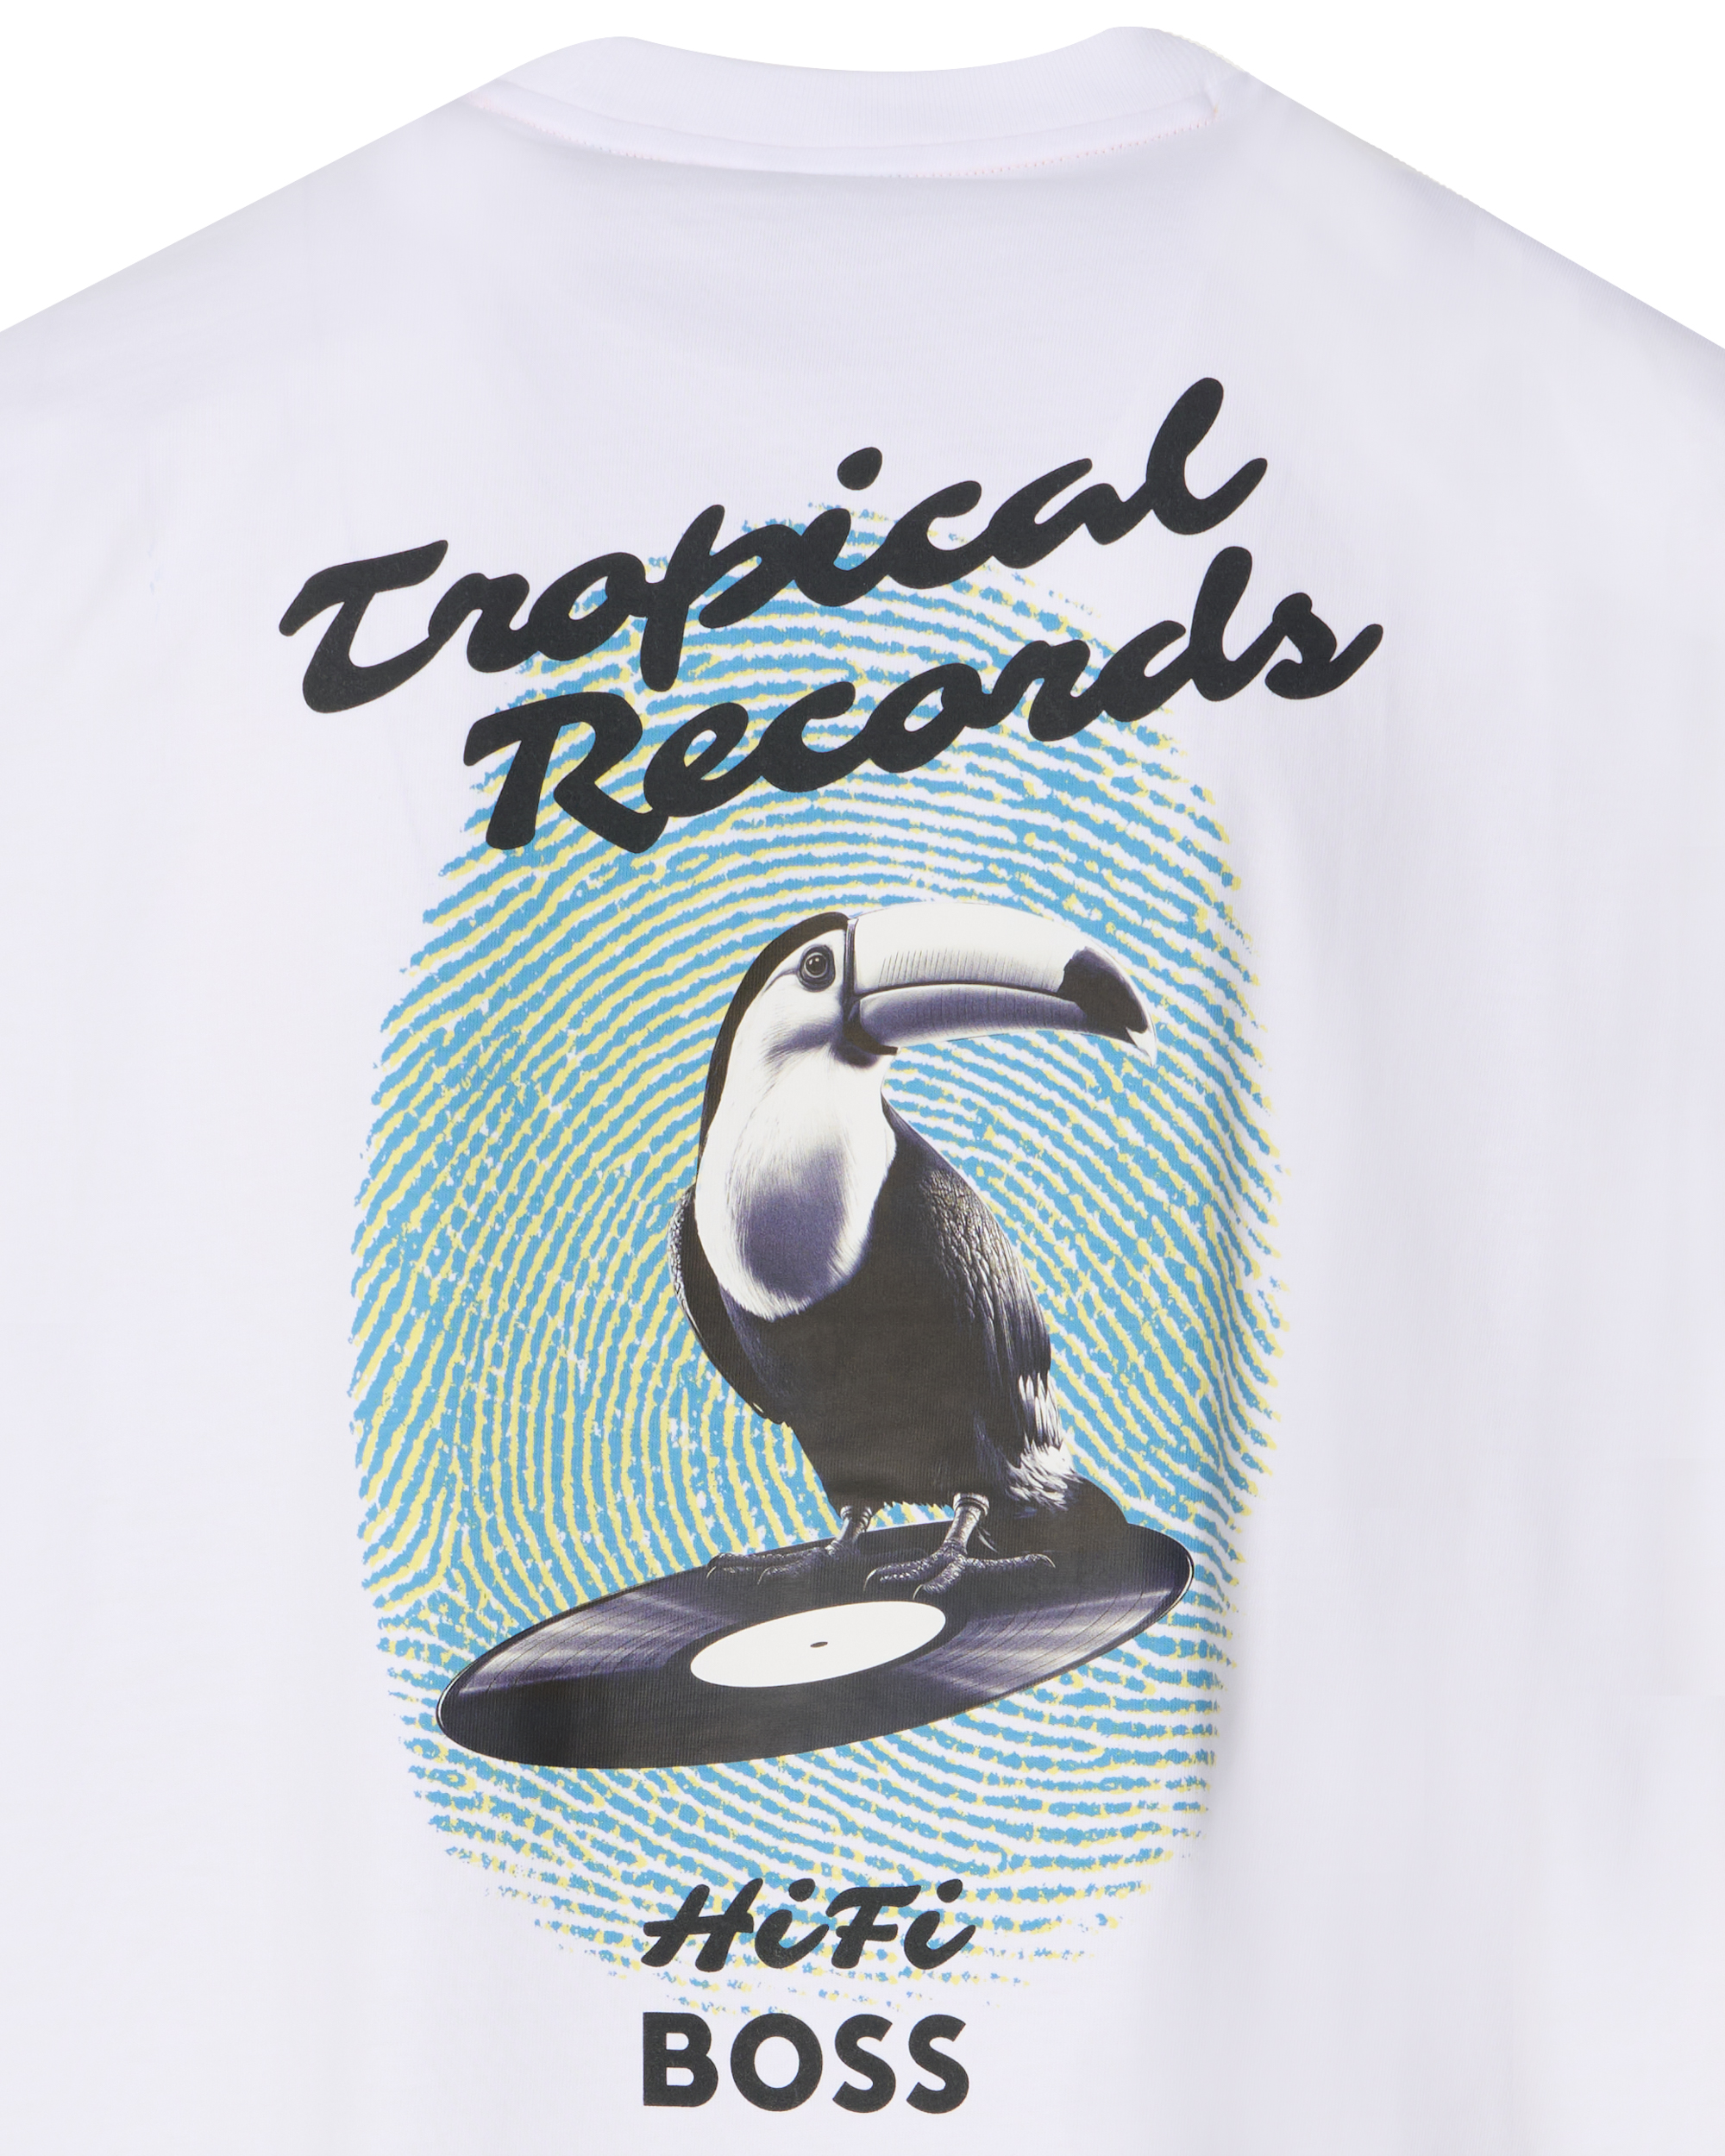 BOSS Casual Te_Records Heren T-shirt KM